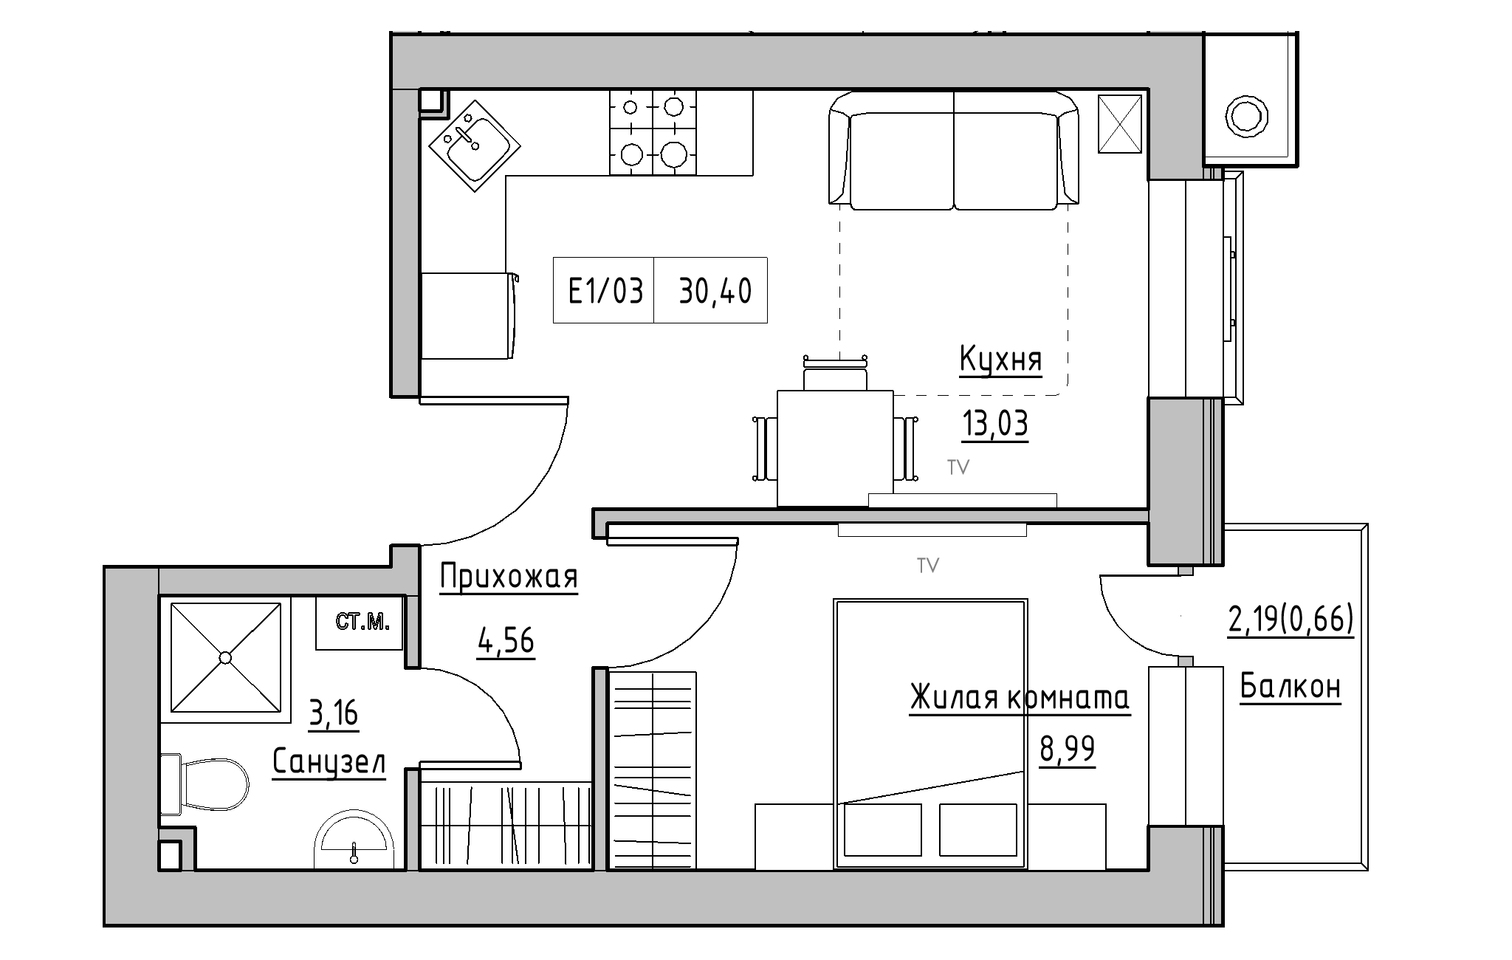 Планировка 1-к квартира площей 30.4м2, KS-013-05/0002.